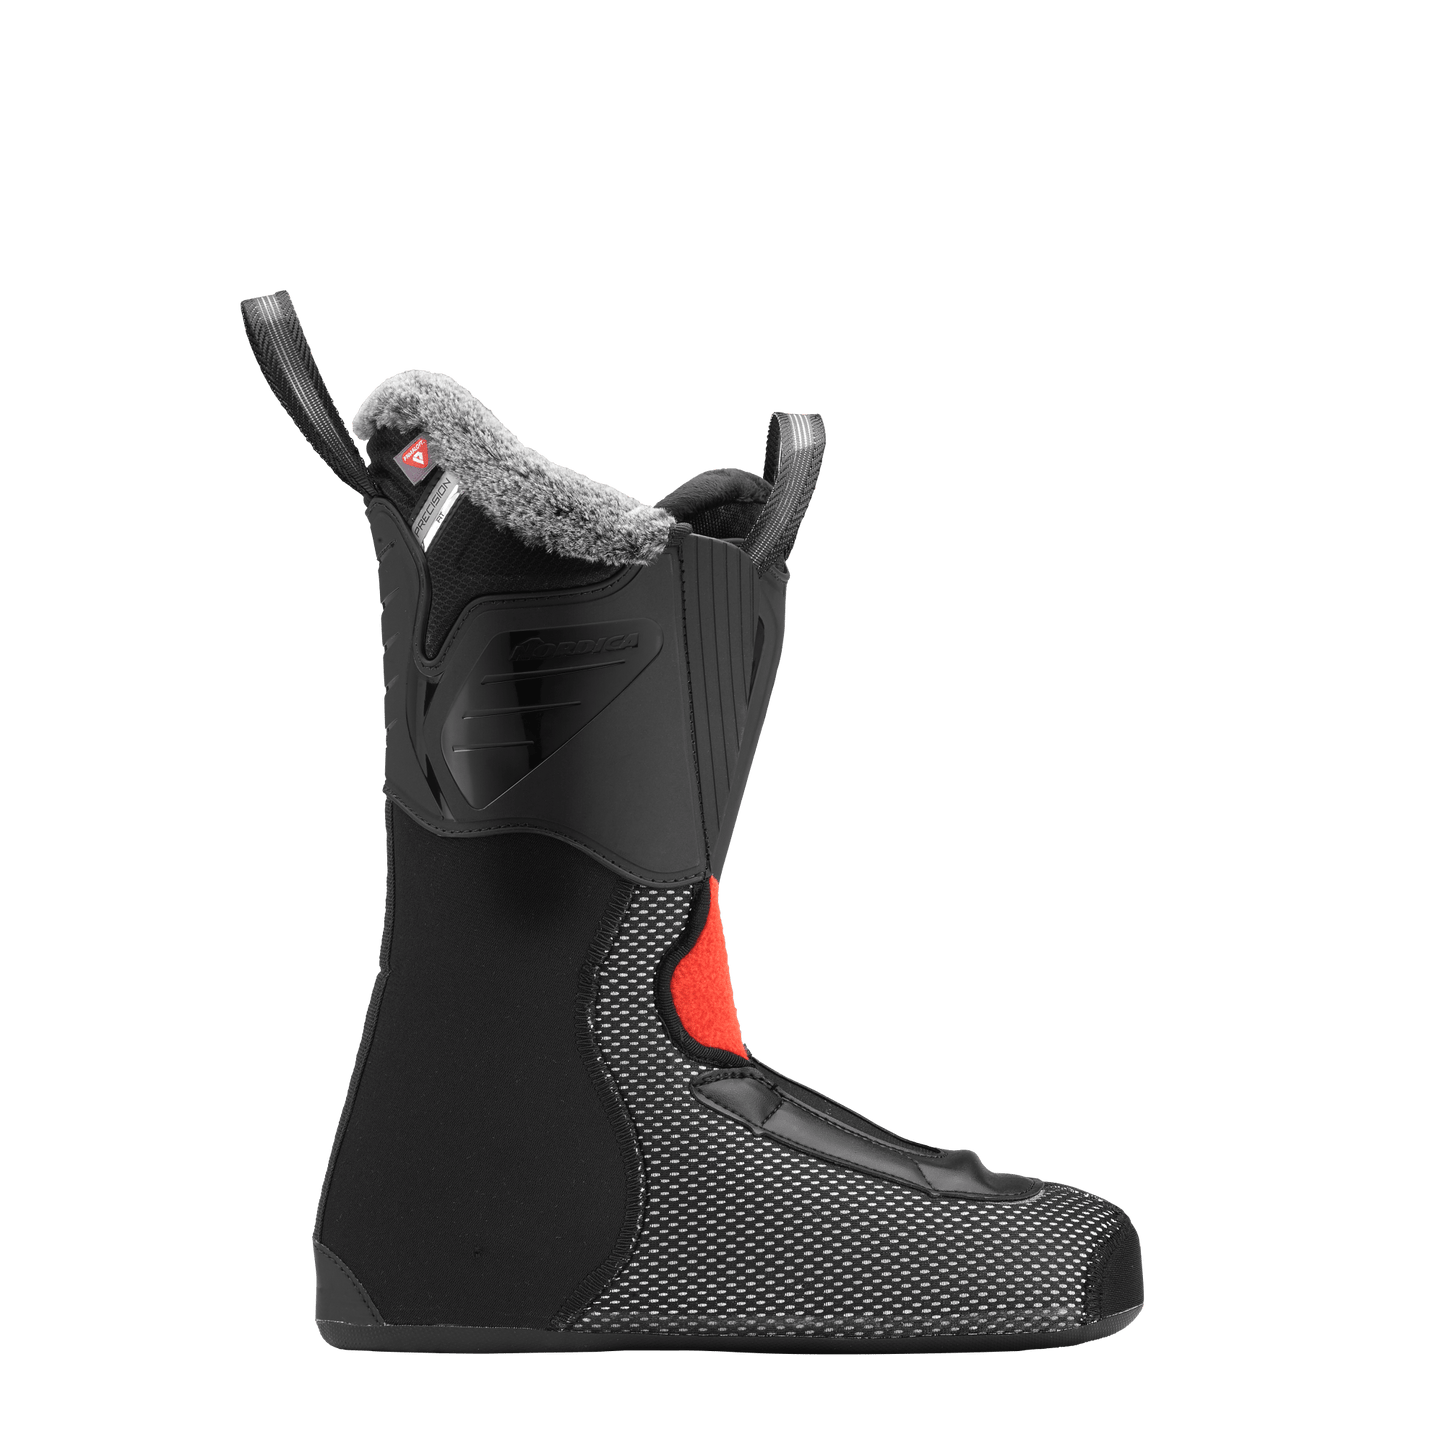 Nordica Sportmachine 3 85 W Ski Boots 2024 - Women's